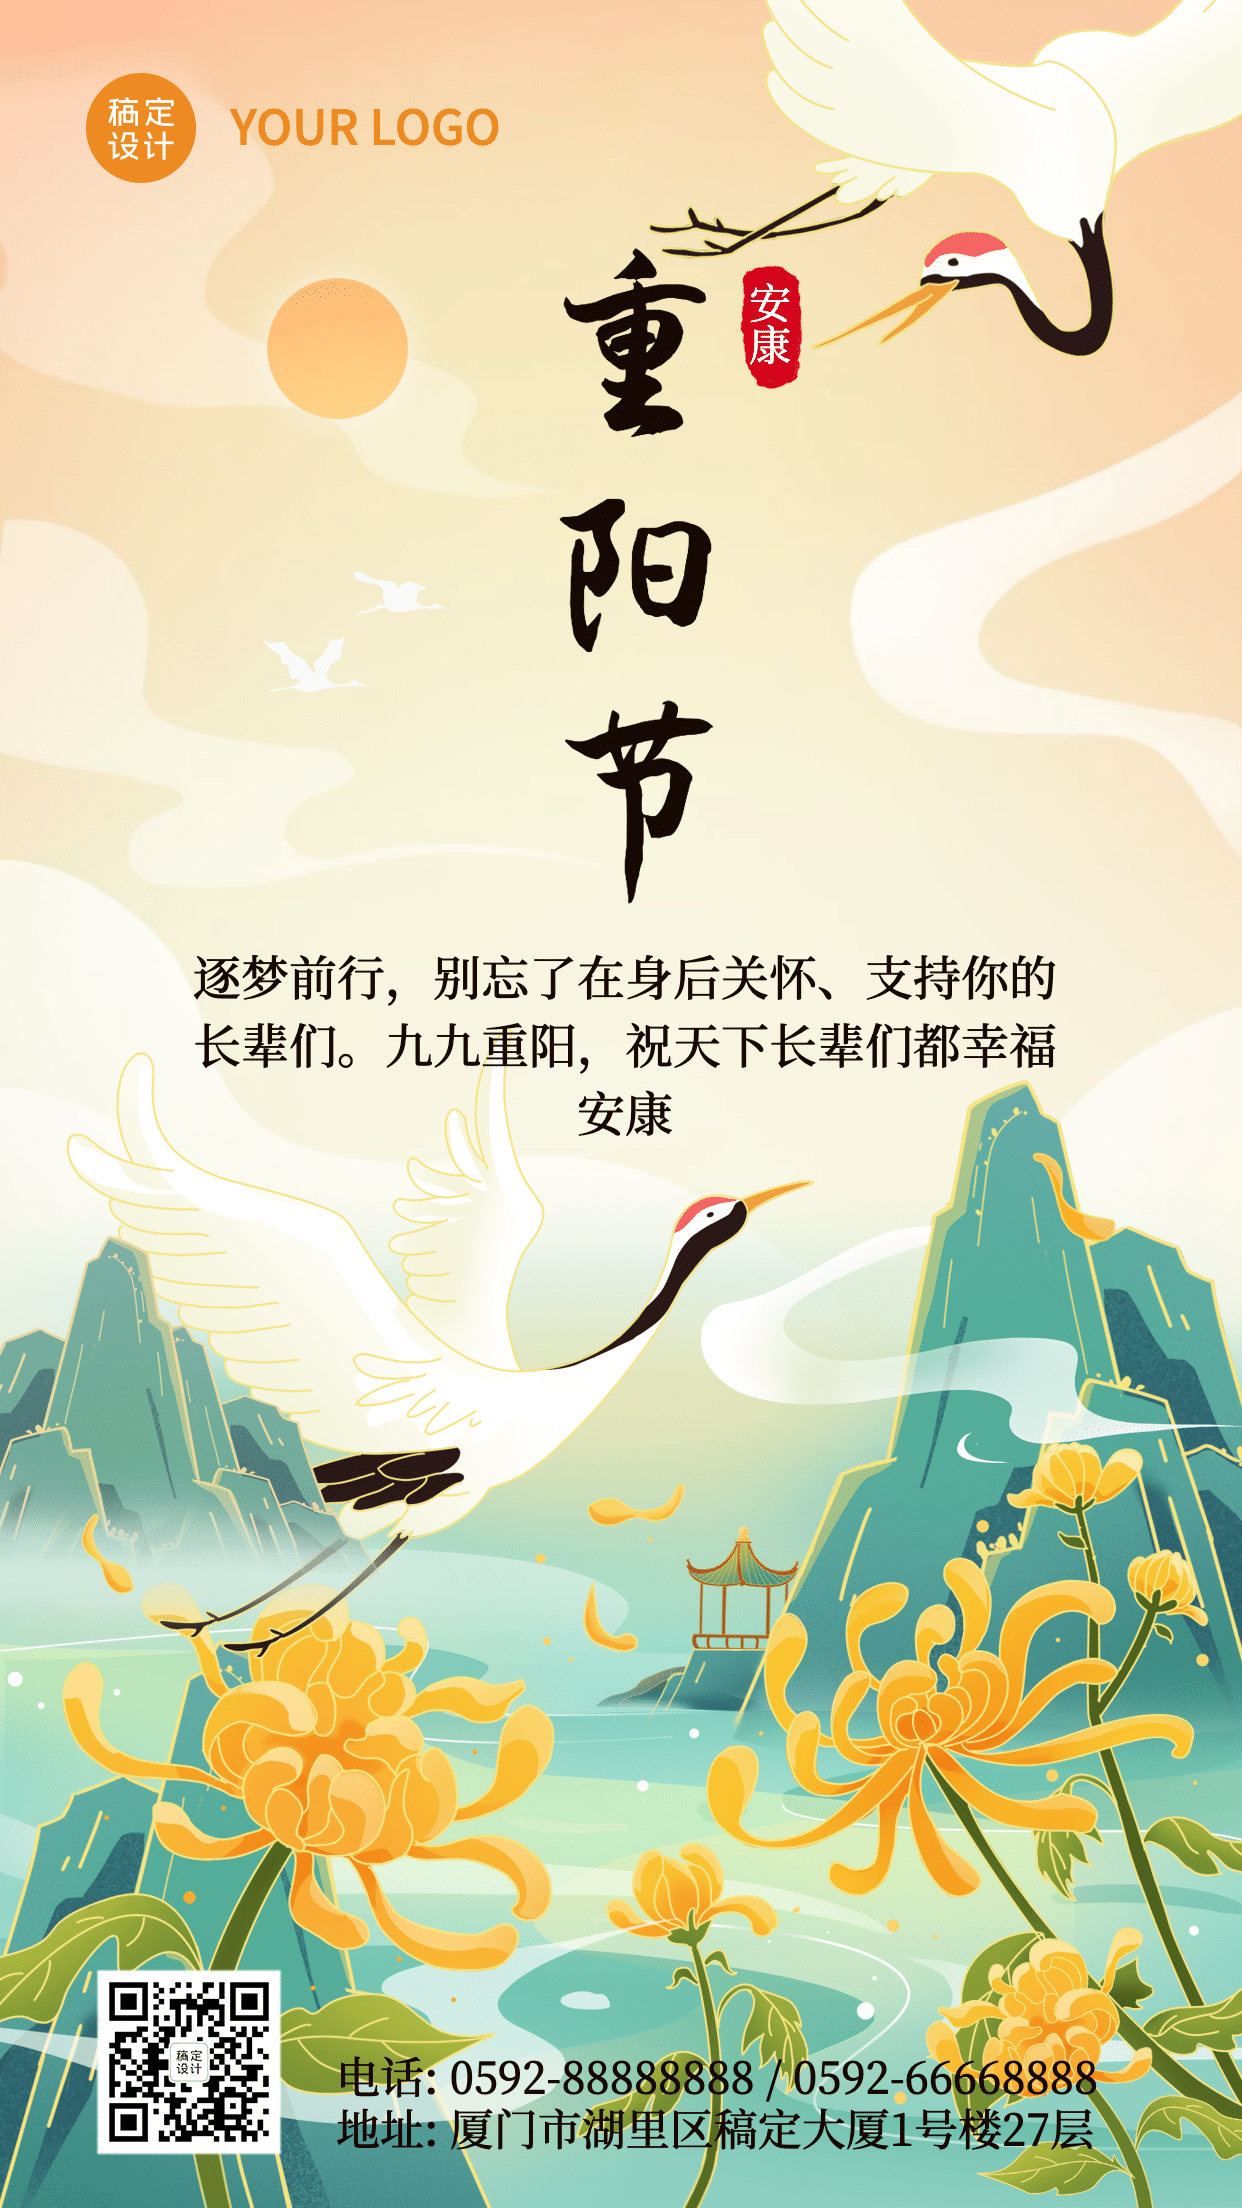 重阳节祝福古风仙鹤插画祝福海报